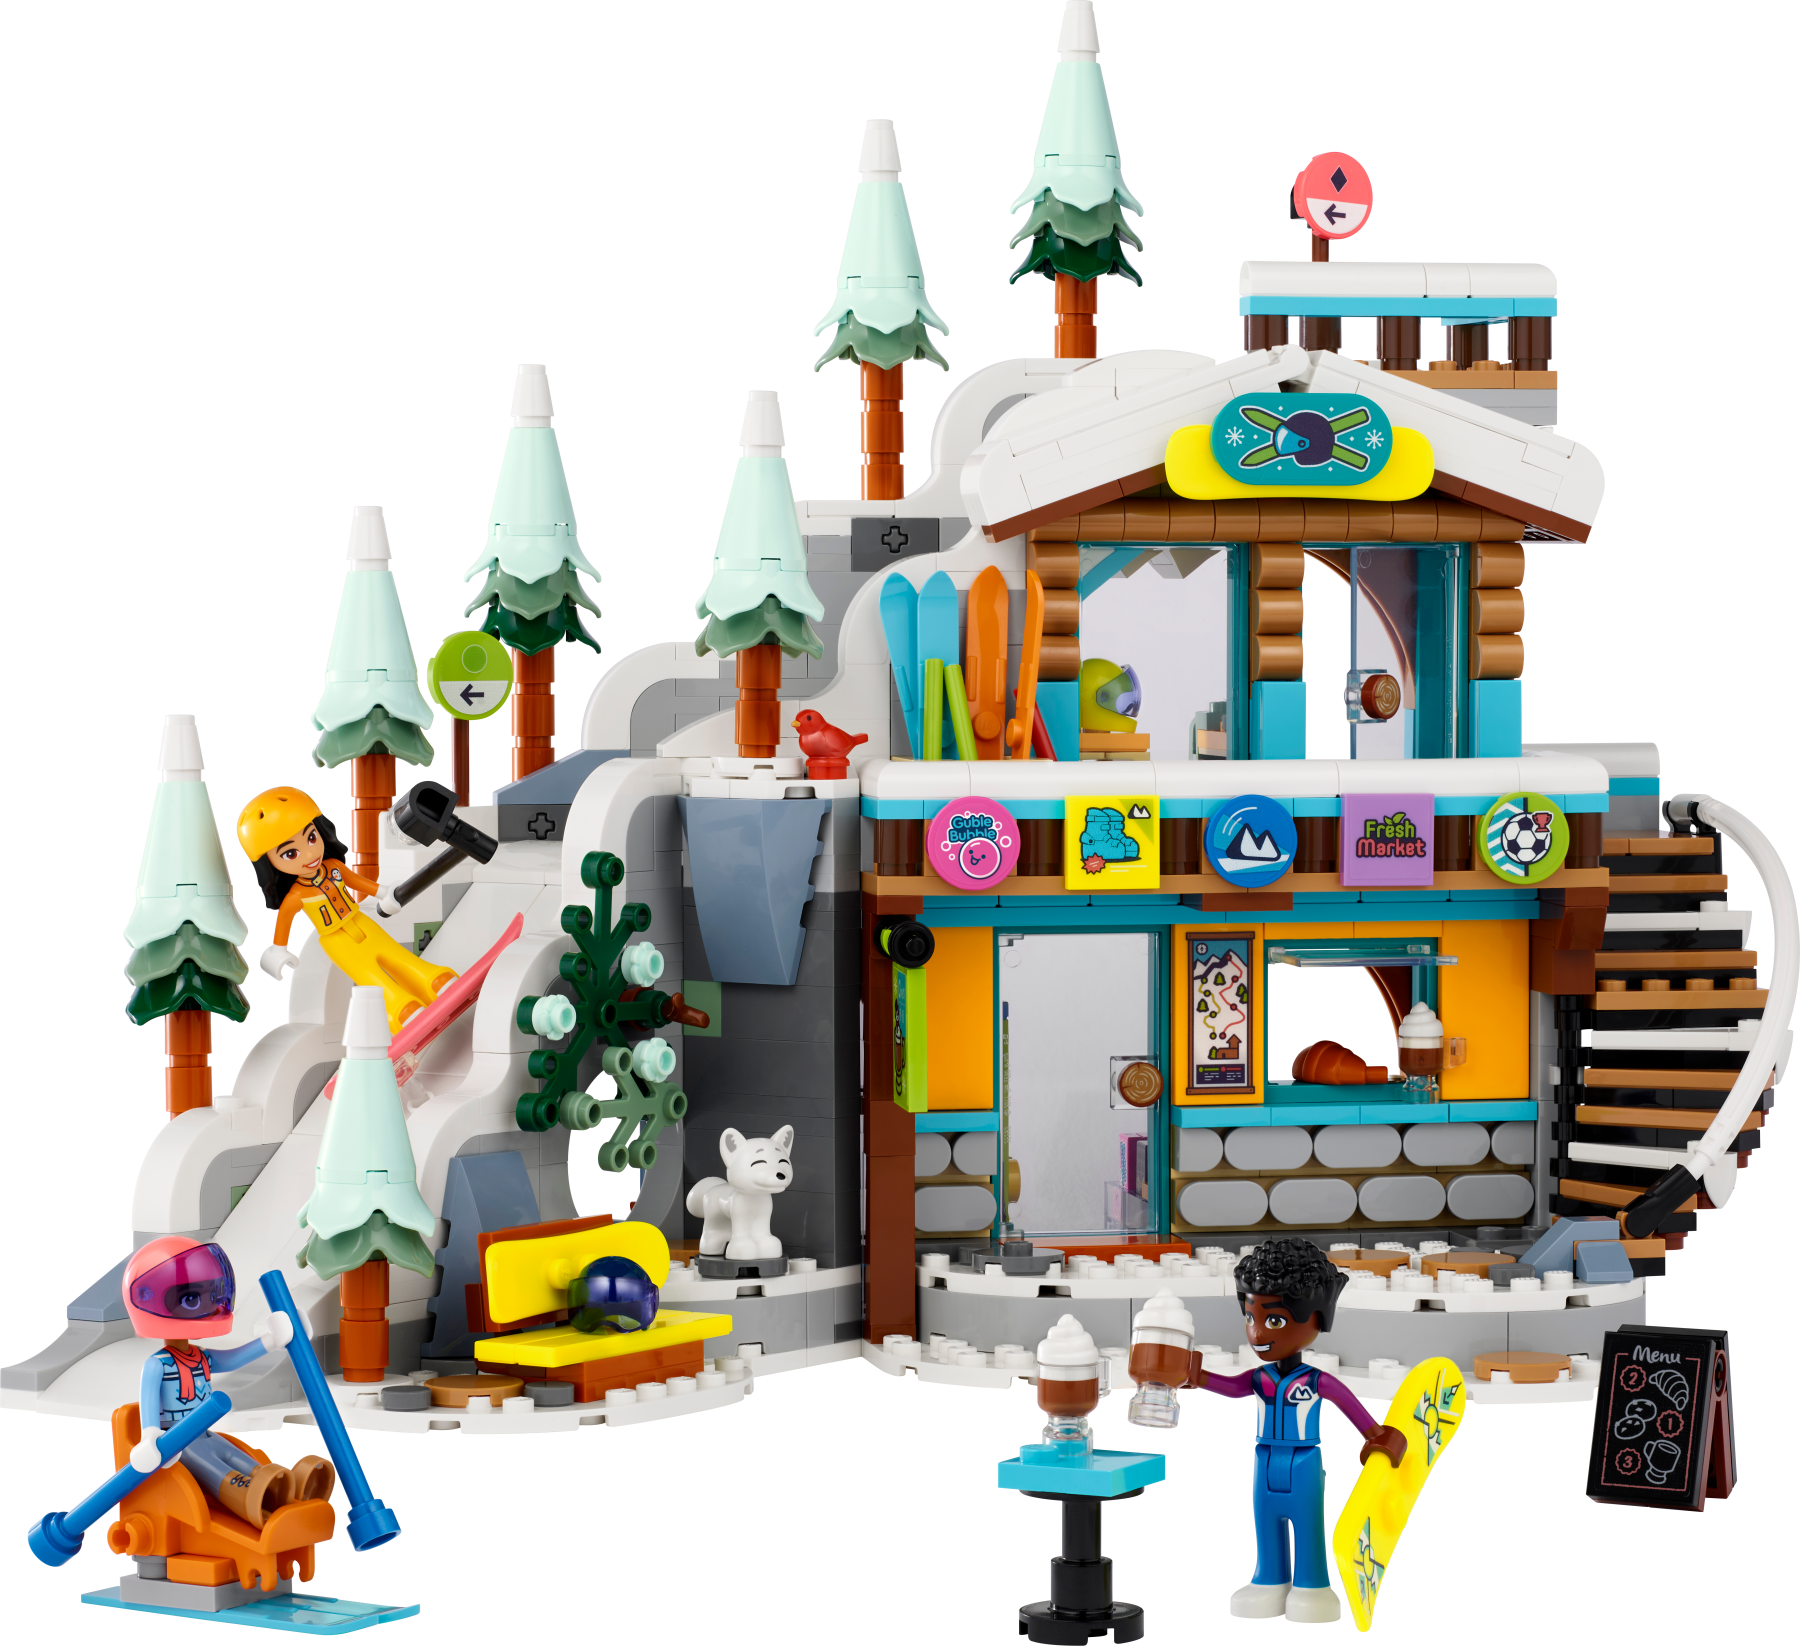 Lego friends 41756 pista da sci e baita, set sport invernali con mini bamboline, giochi per bambine e bambini, regalo di natale - LEGO FRIENDS